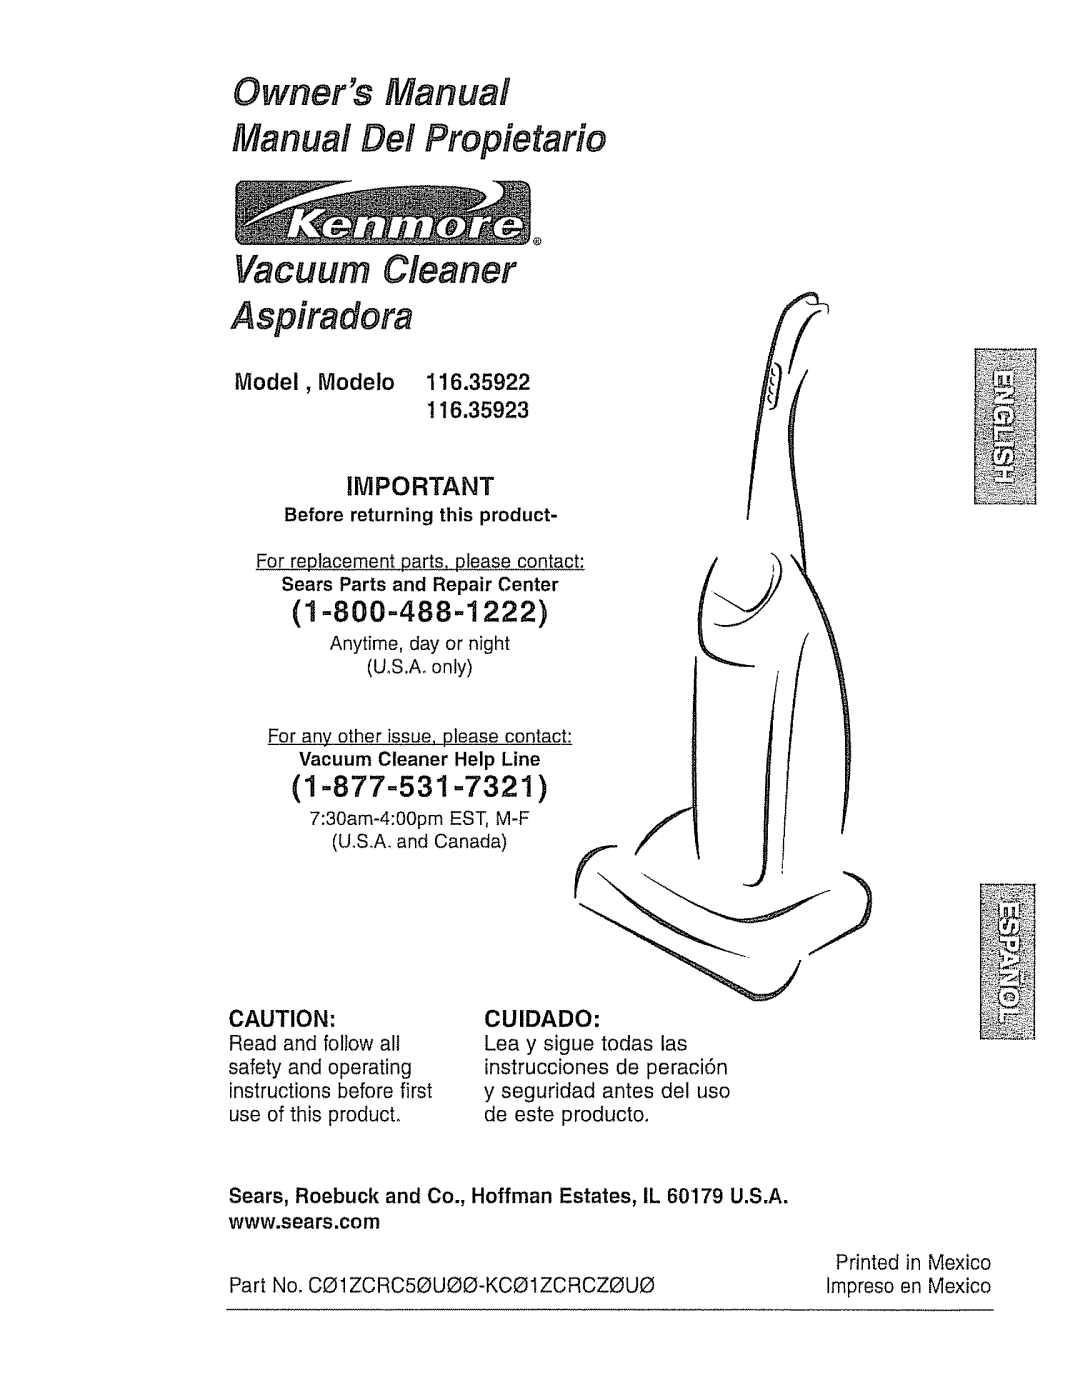 Kenmore 116.35923, 116.35922 owner manual Owners Manual Manual Del Propietarie, Vacuum Cleaner Aspiradora, 1 =800-488-1222 